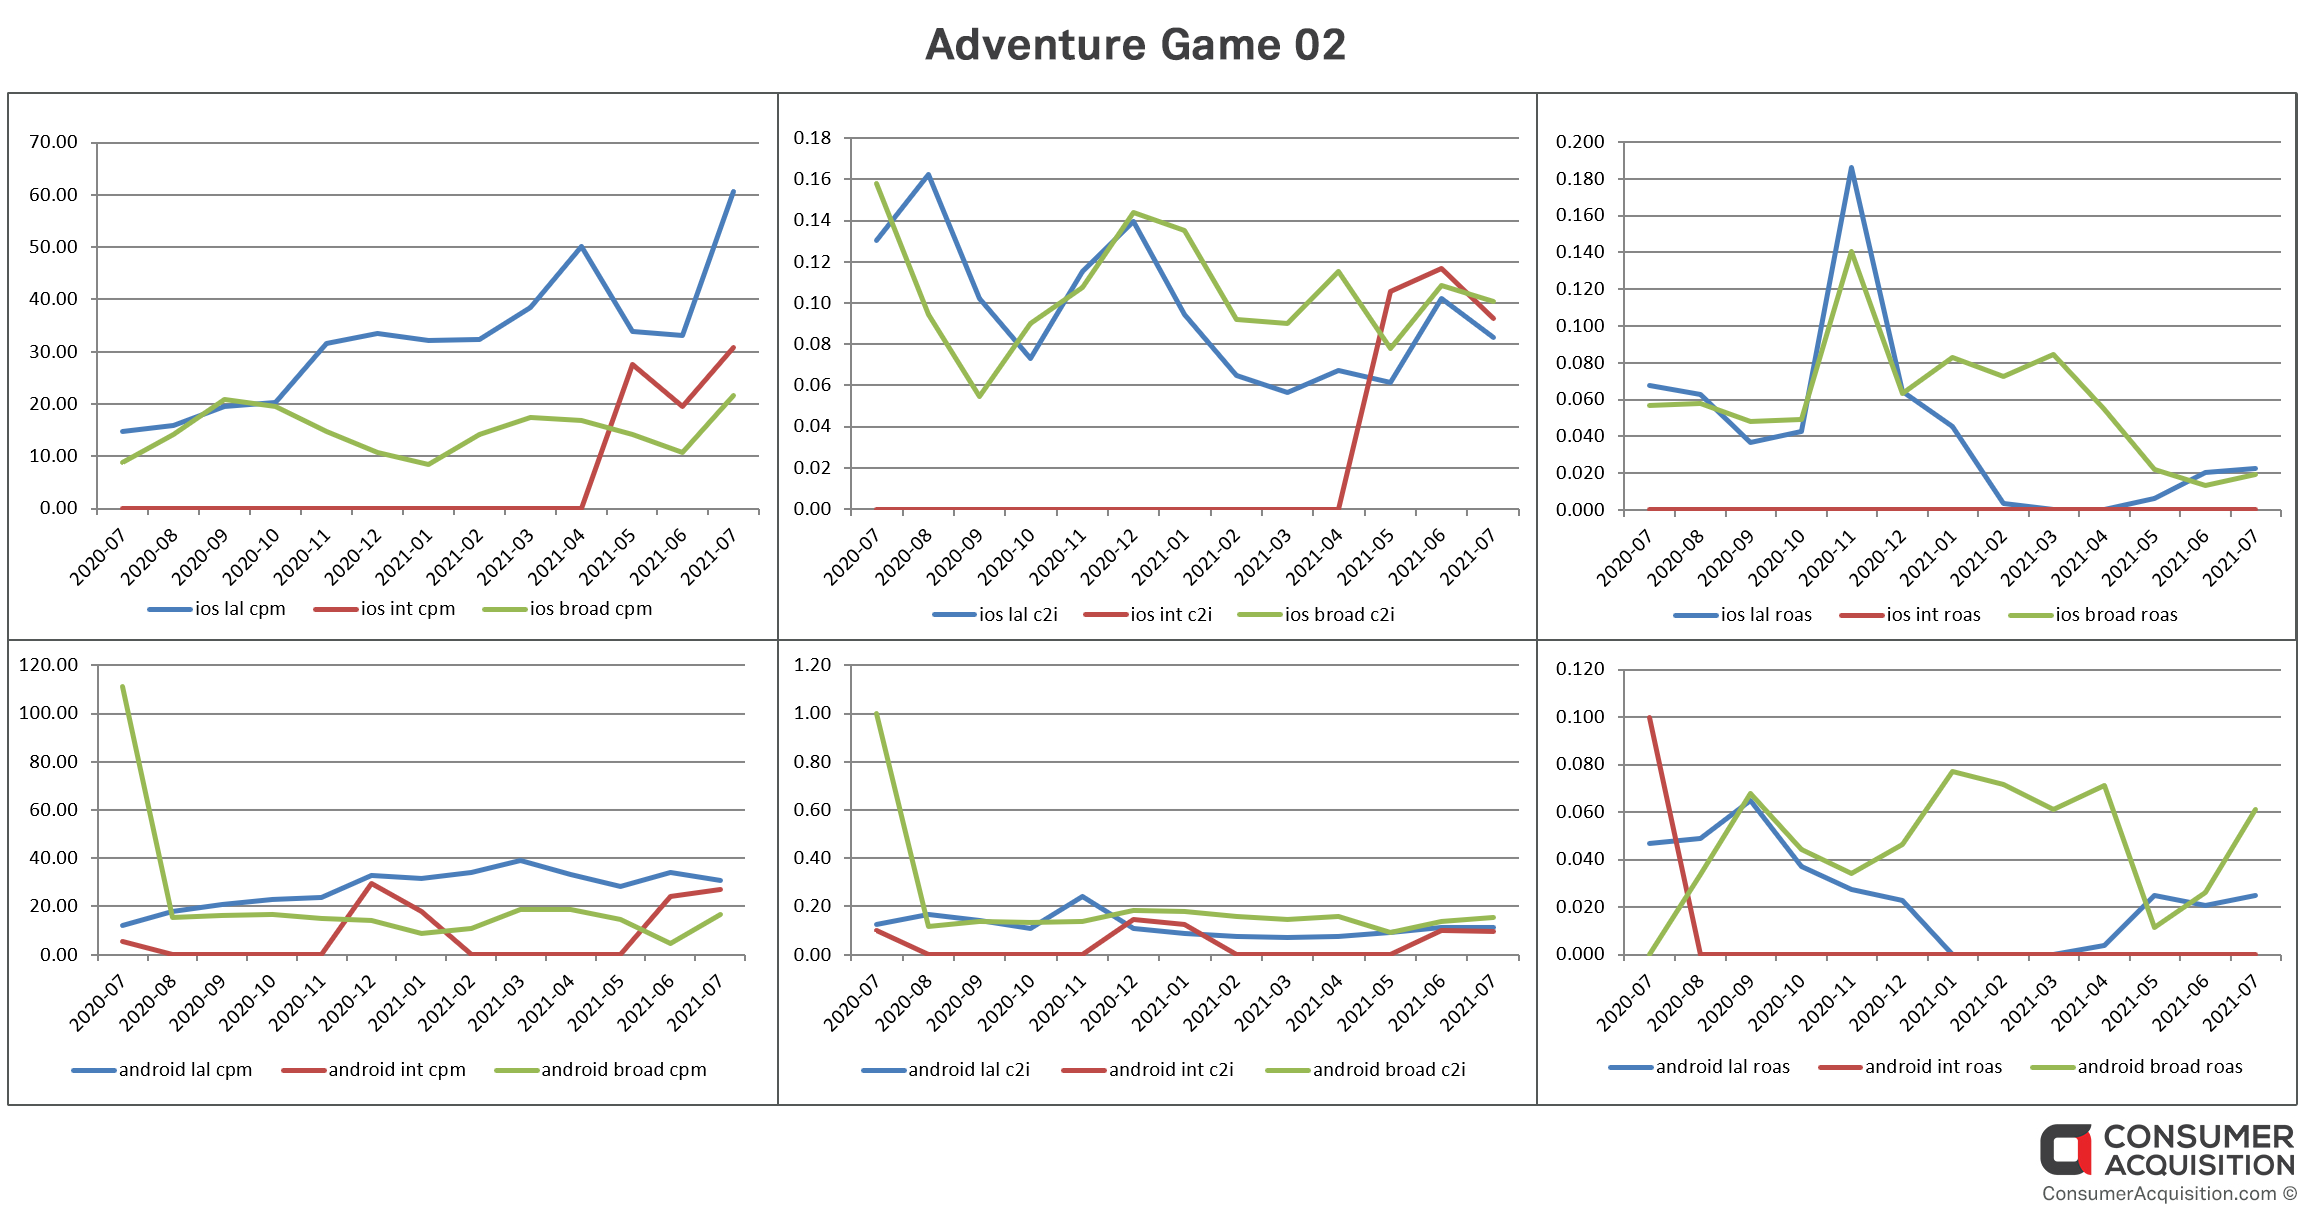 Adventure Game 02